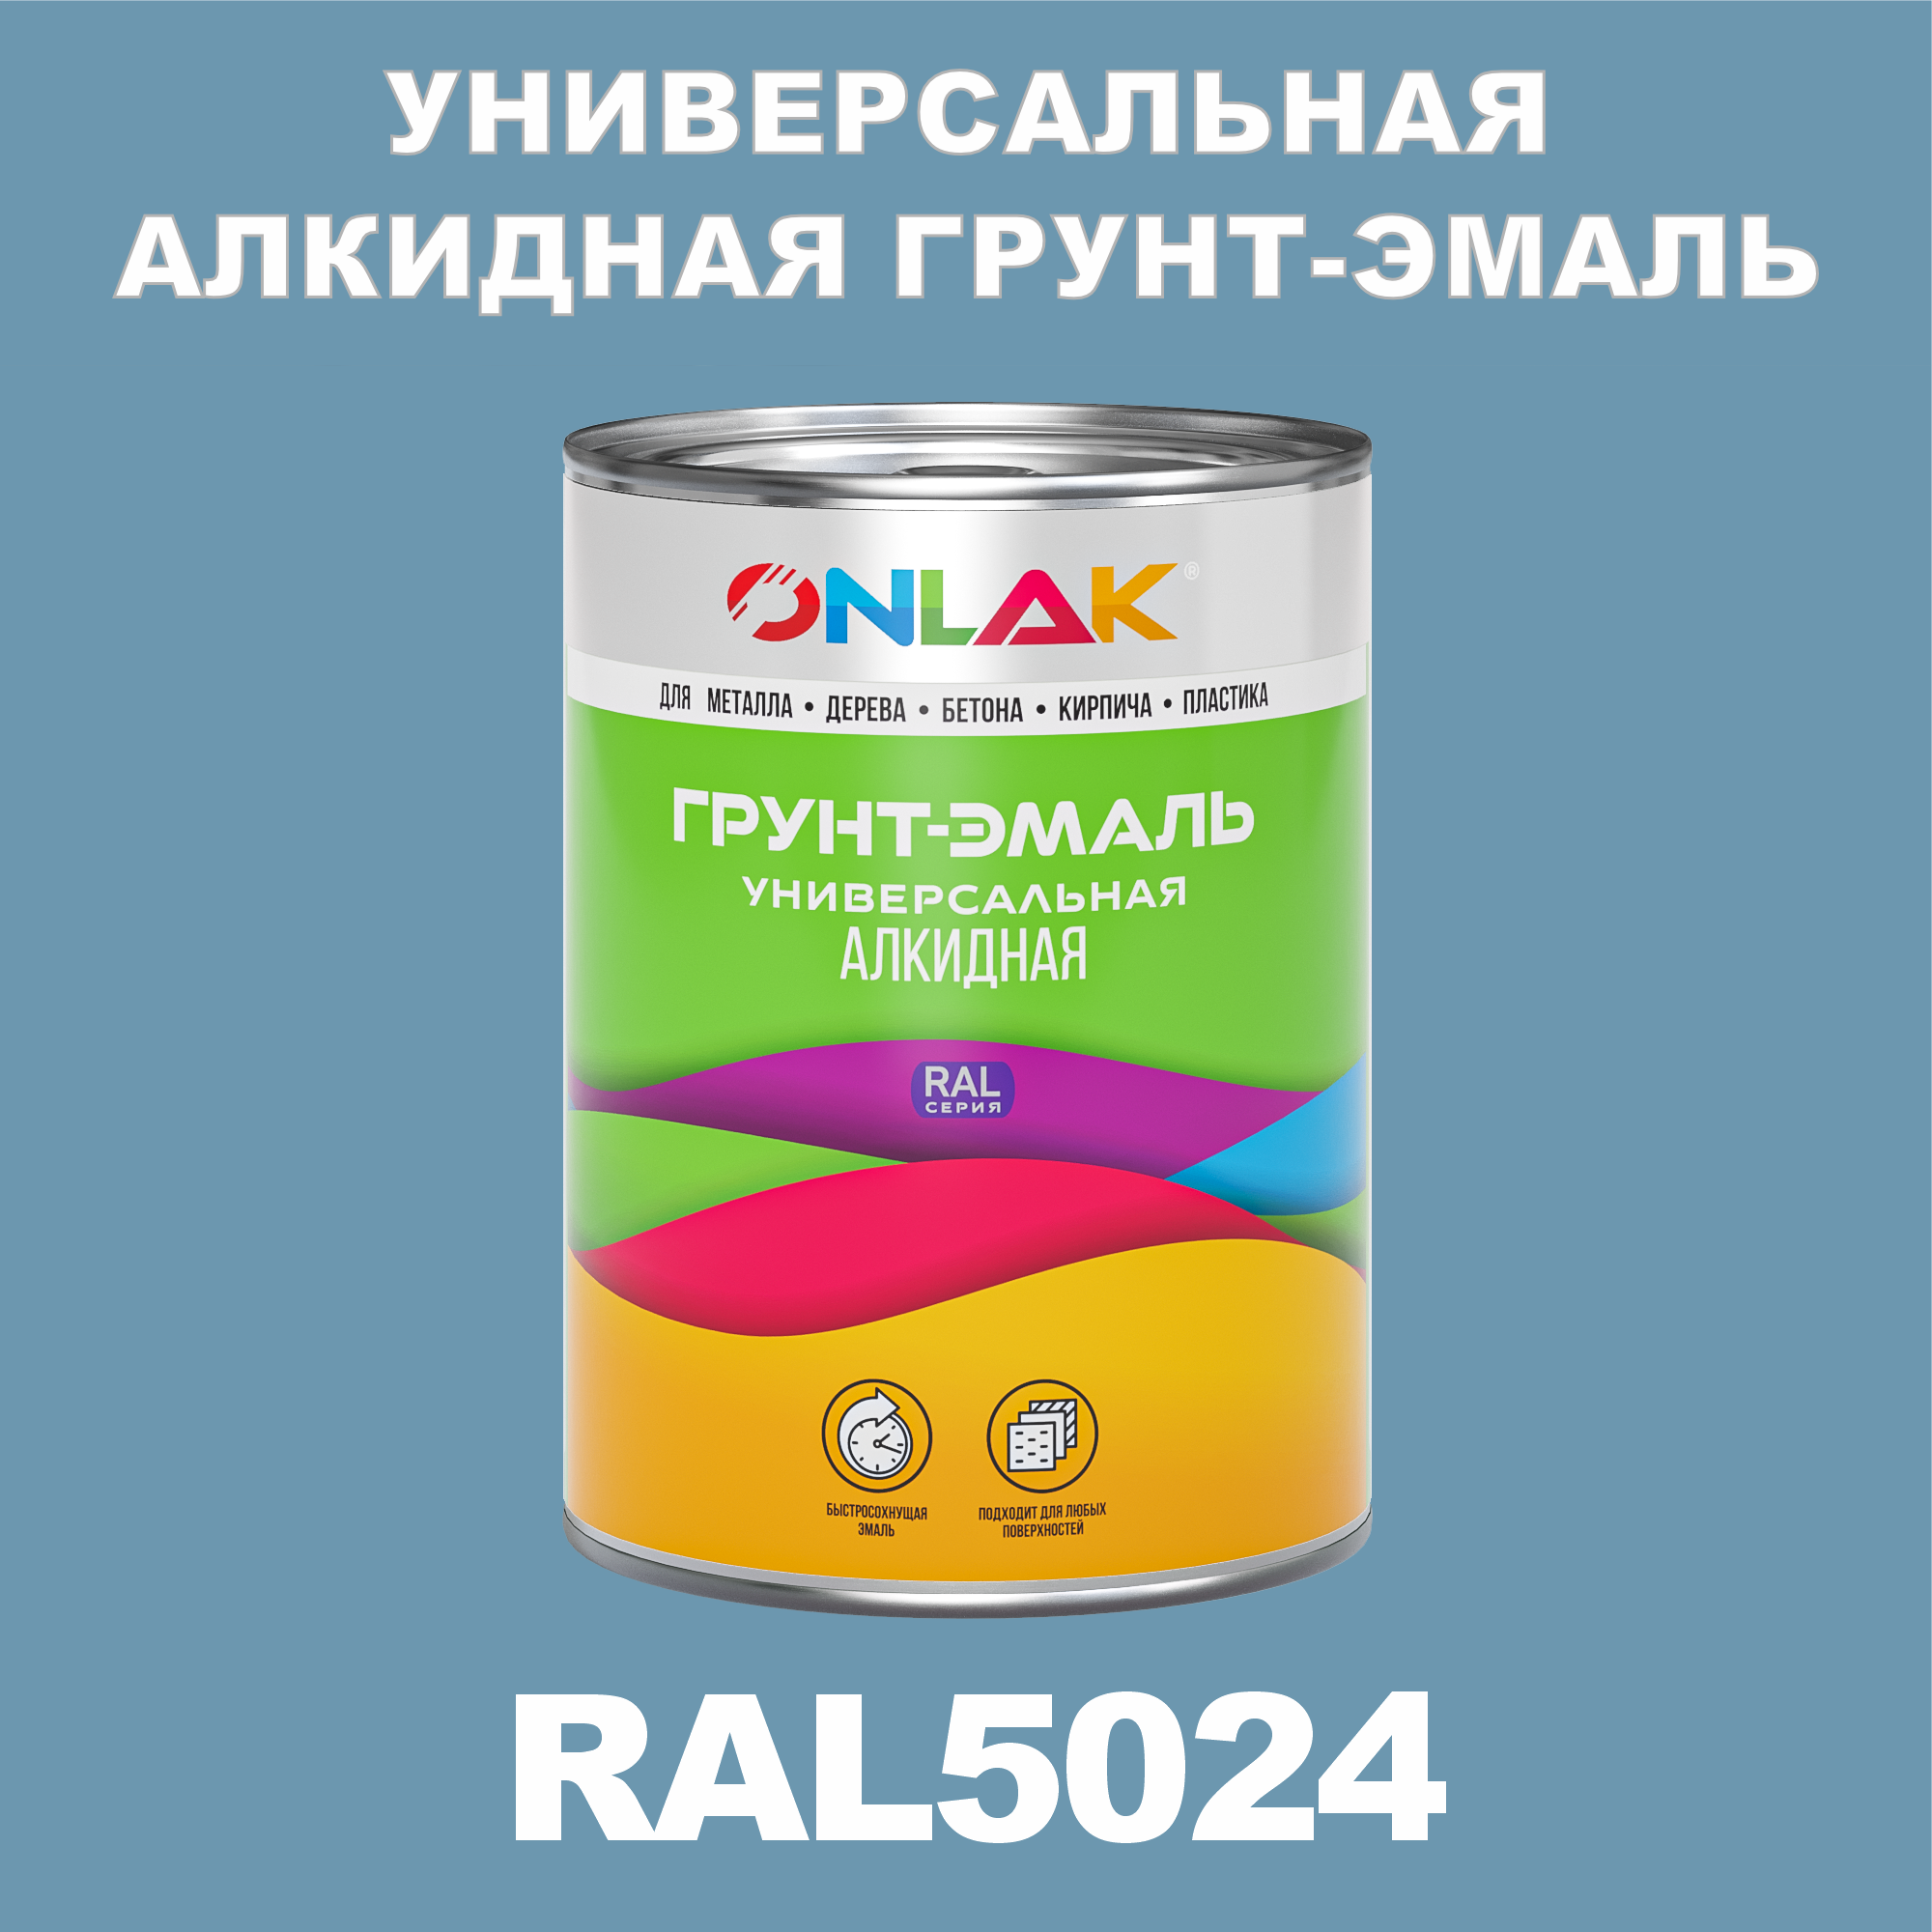 Грунт-эмаль ONLAK 1К RAL5024 антикоррозионная алкидная по металлу по ржавчине 1 кг грунт эмаль skladno по ржавчине алкидная желтая 1 8 кг